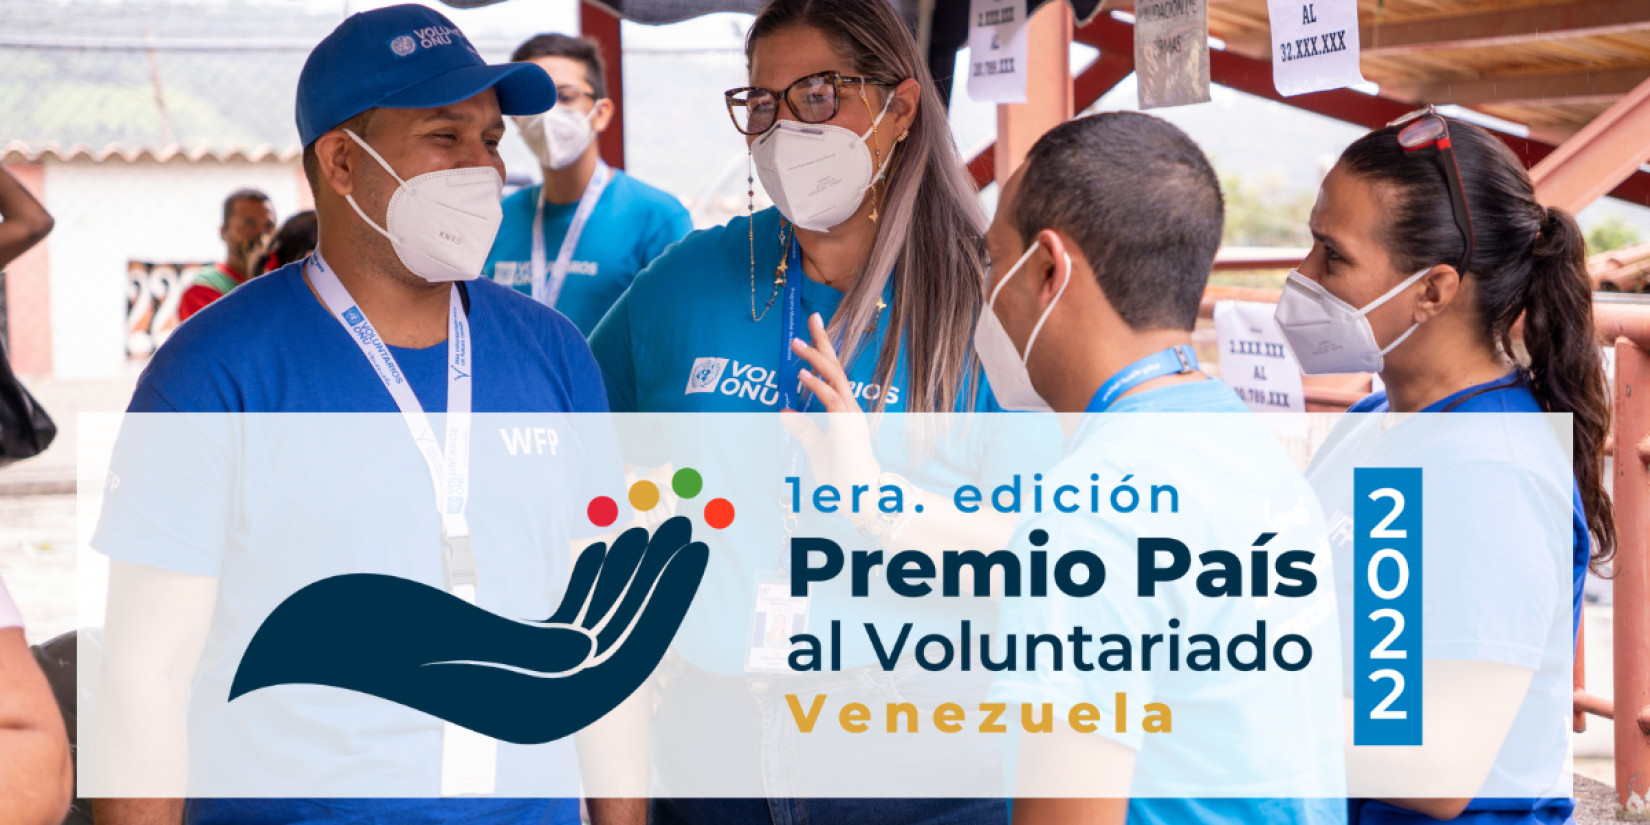 1era. edición del Premio País al Voluntariado 2022 (Venezuela)